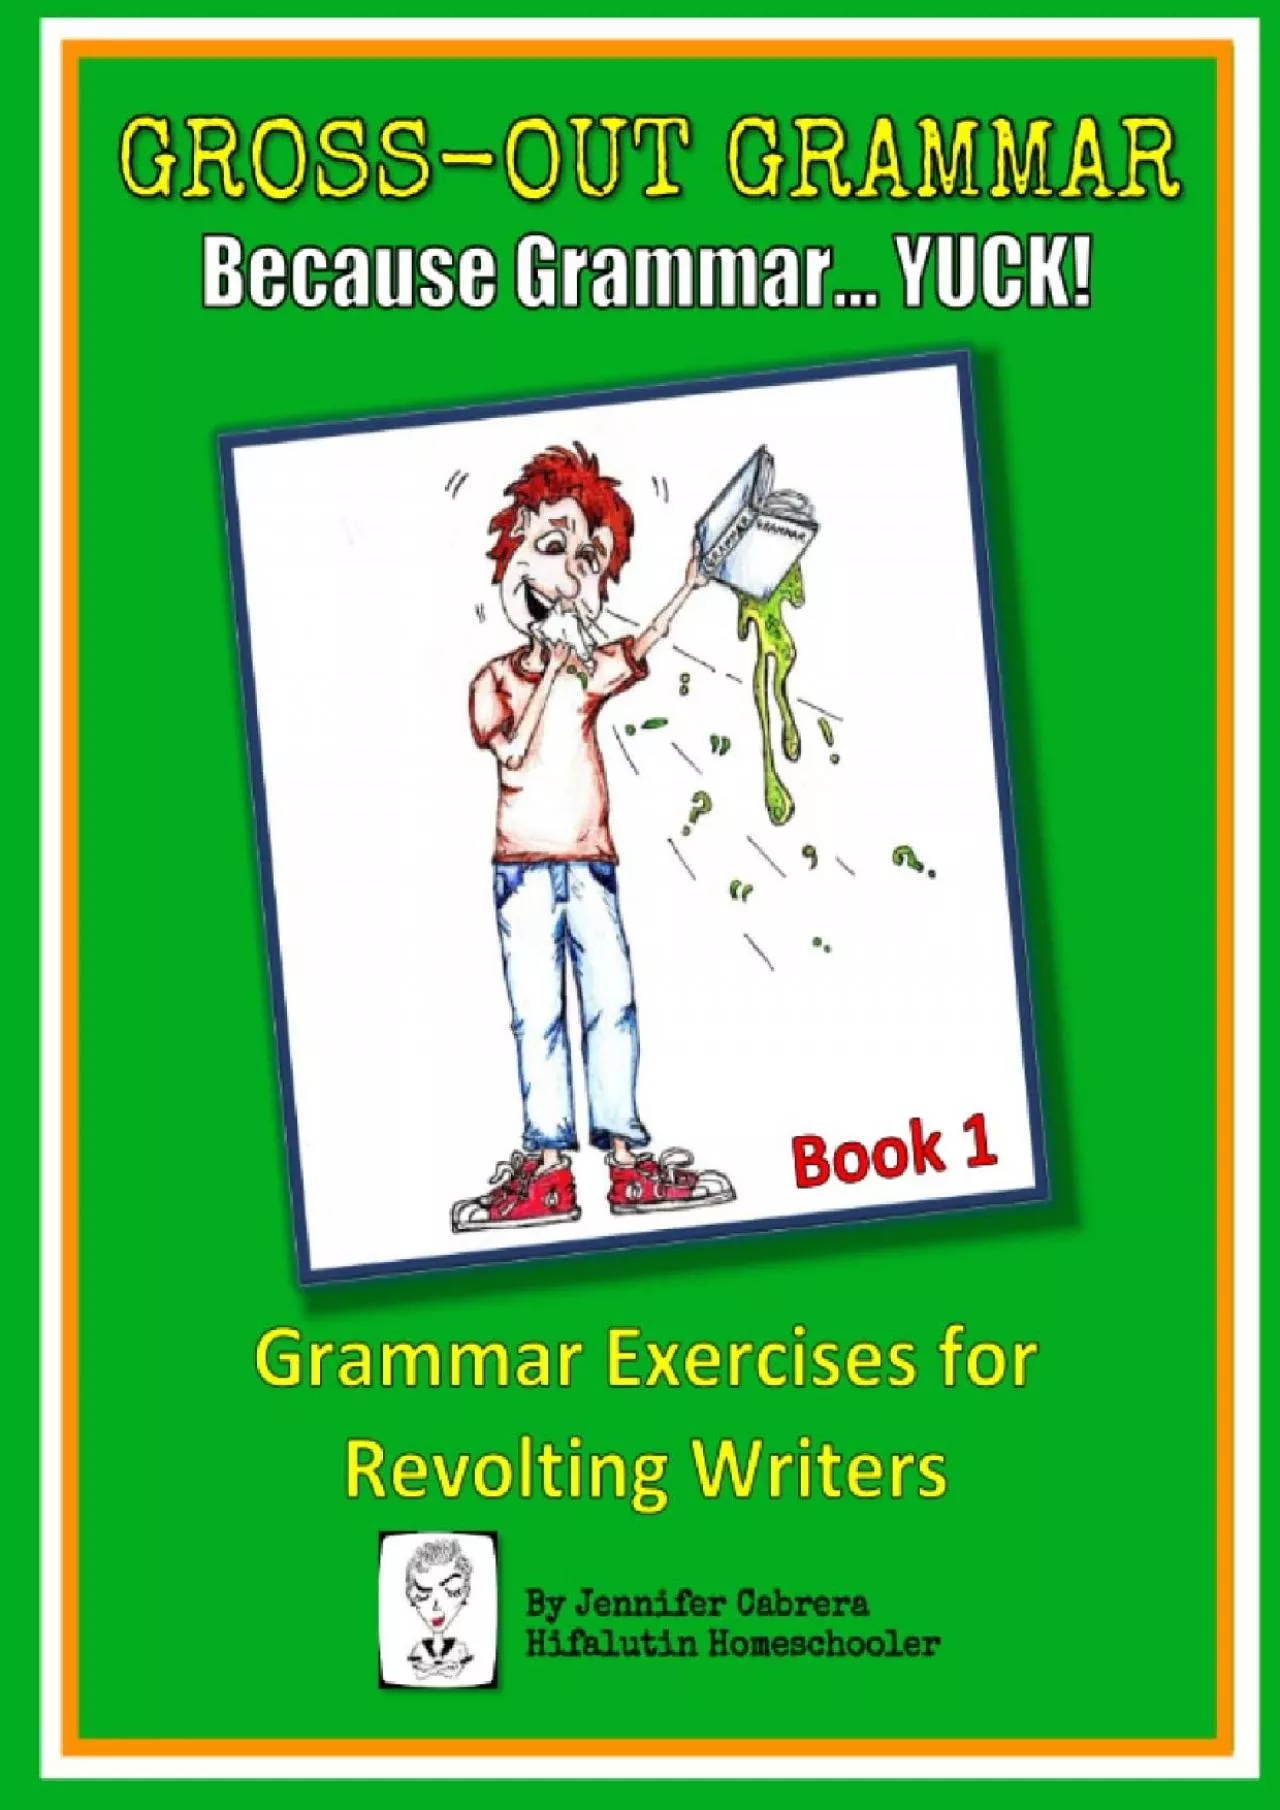 [EBOOK] Gross-Out Grammar Book 1: Grammar Exercises for Revolting Writers (Gross-Out Grammar